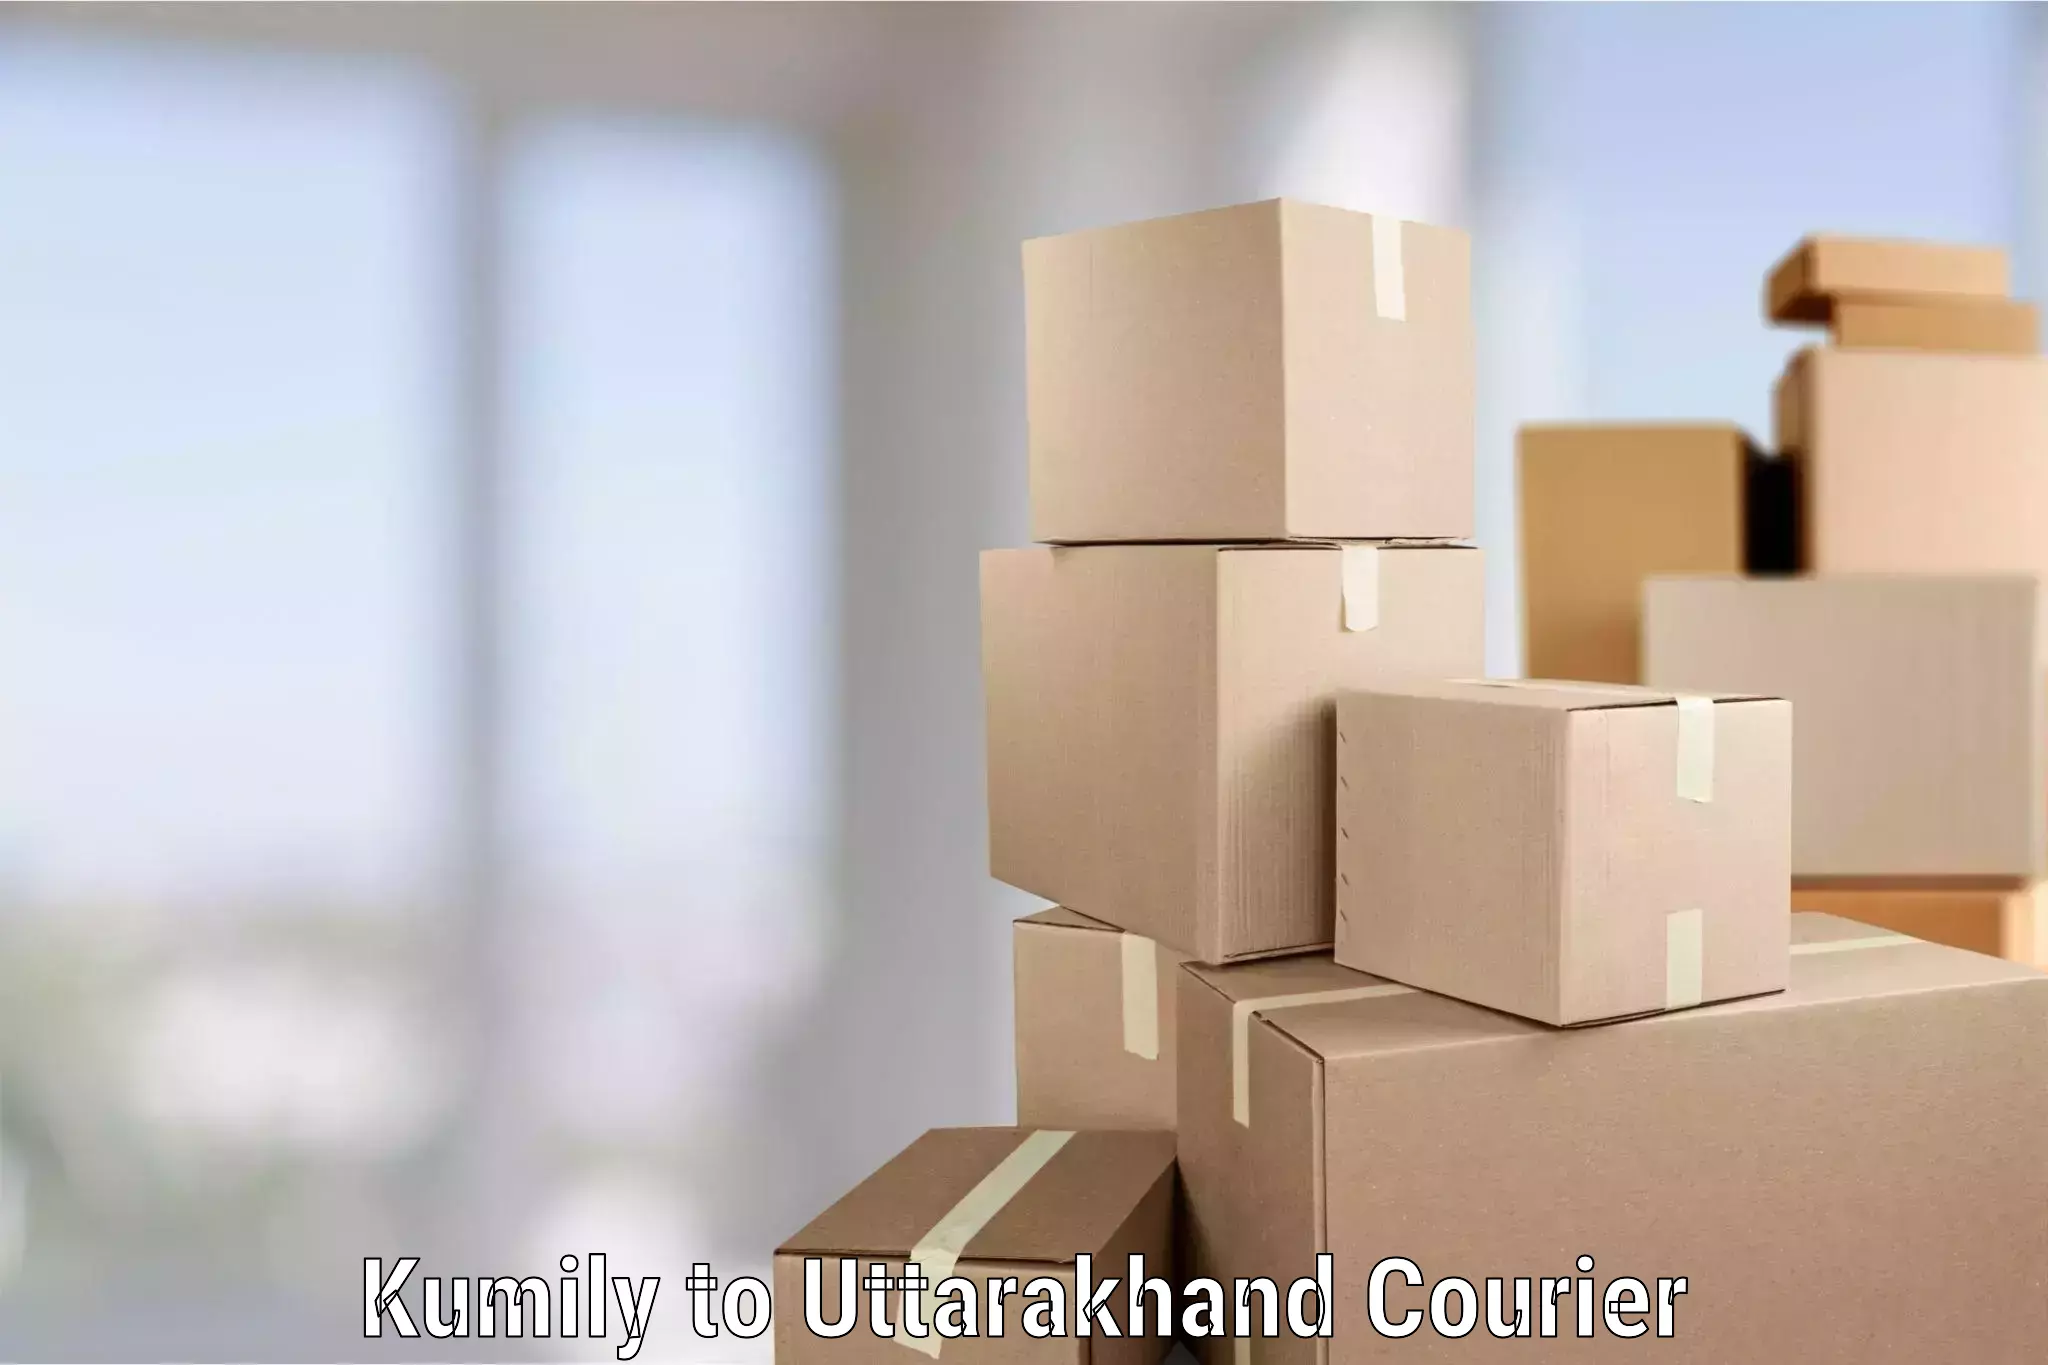 Trusted furniture movers Kumily to Uttarkashi